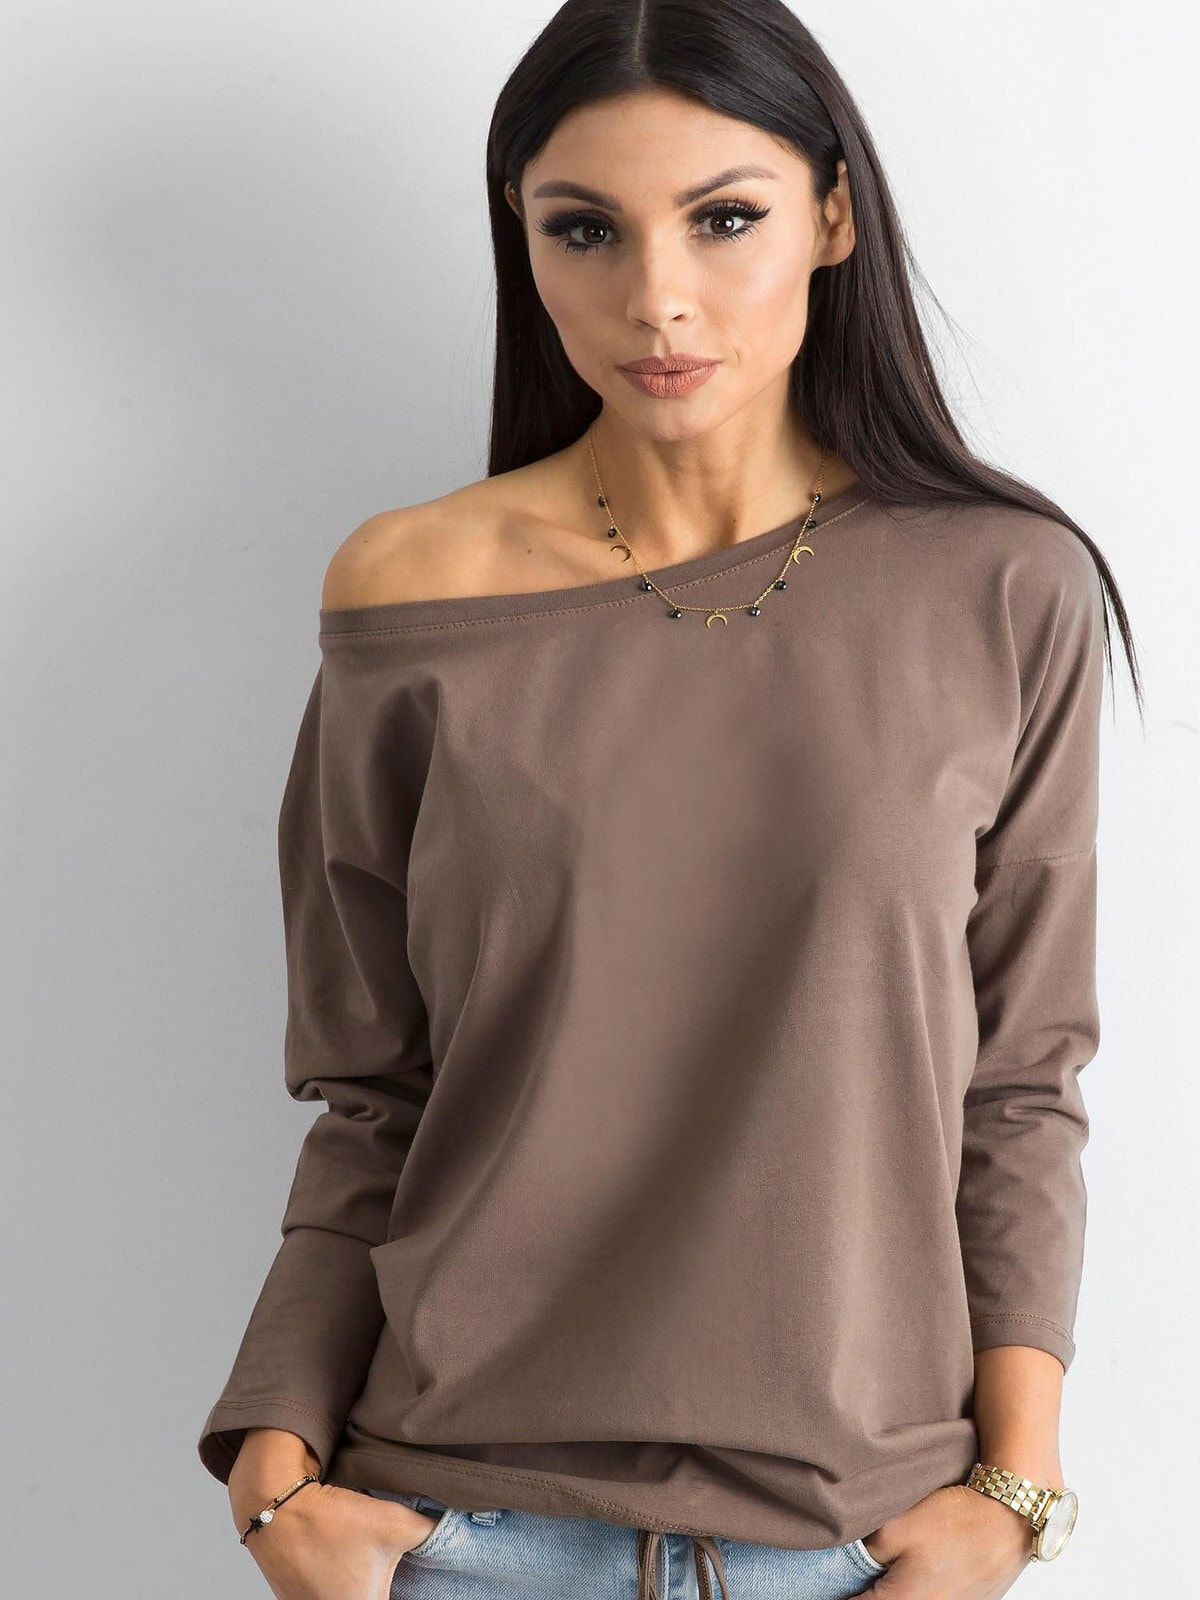 Женская удлиненная блузка свободного кроя на одно плечо с длинным рукавом Factory Price